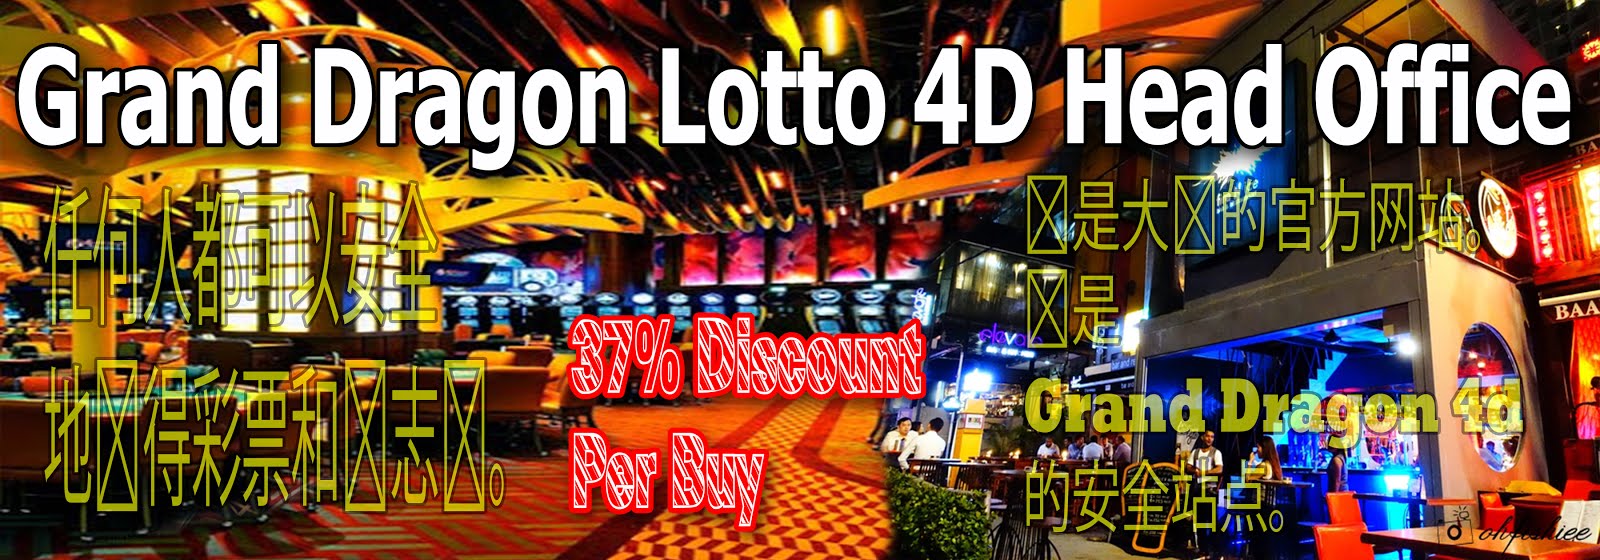 Cambodia 4d lotto